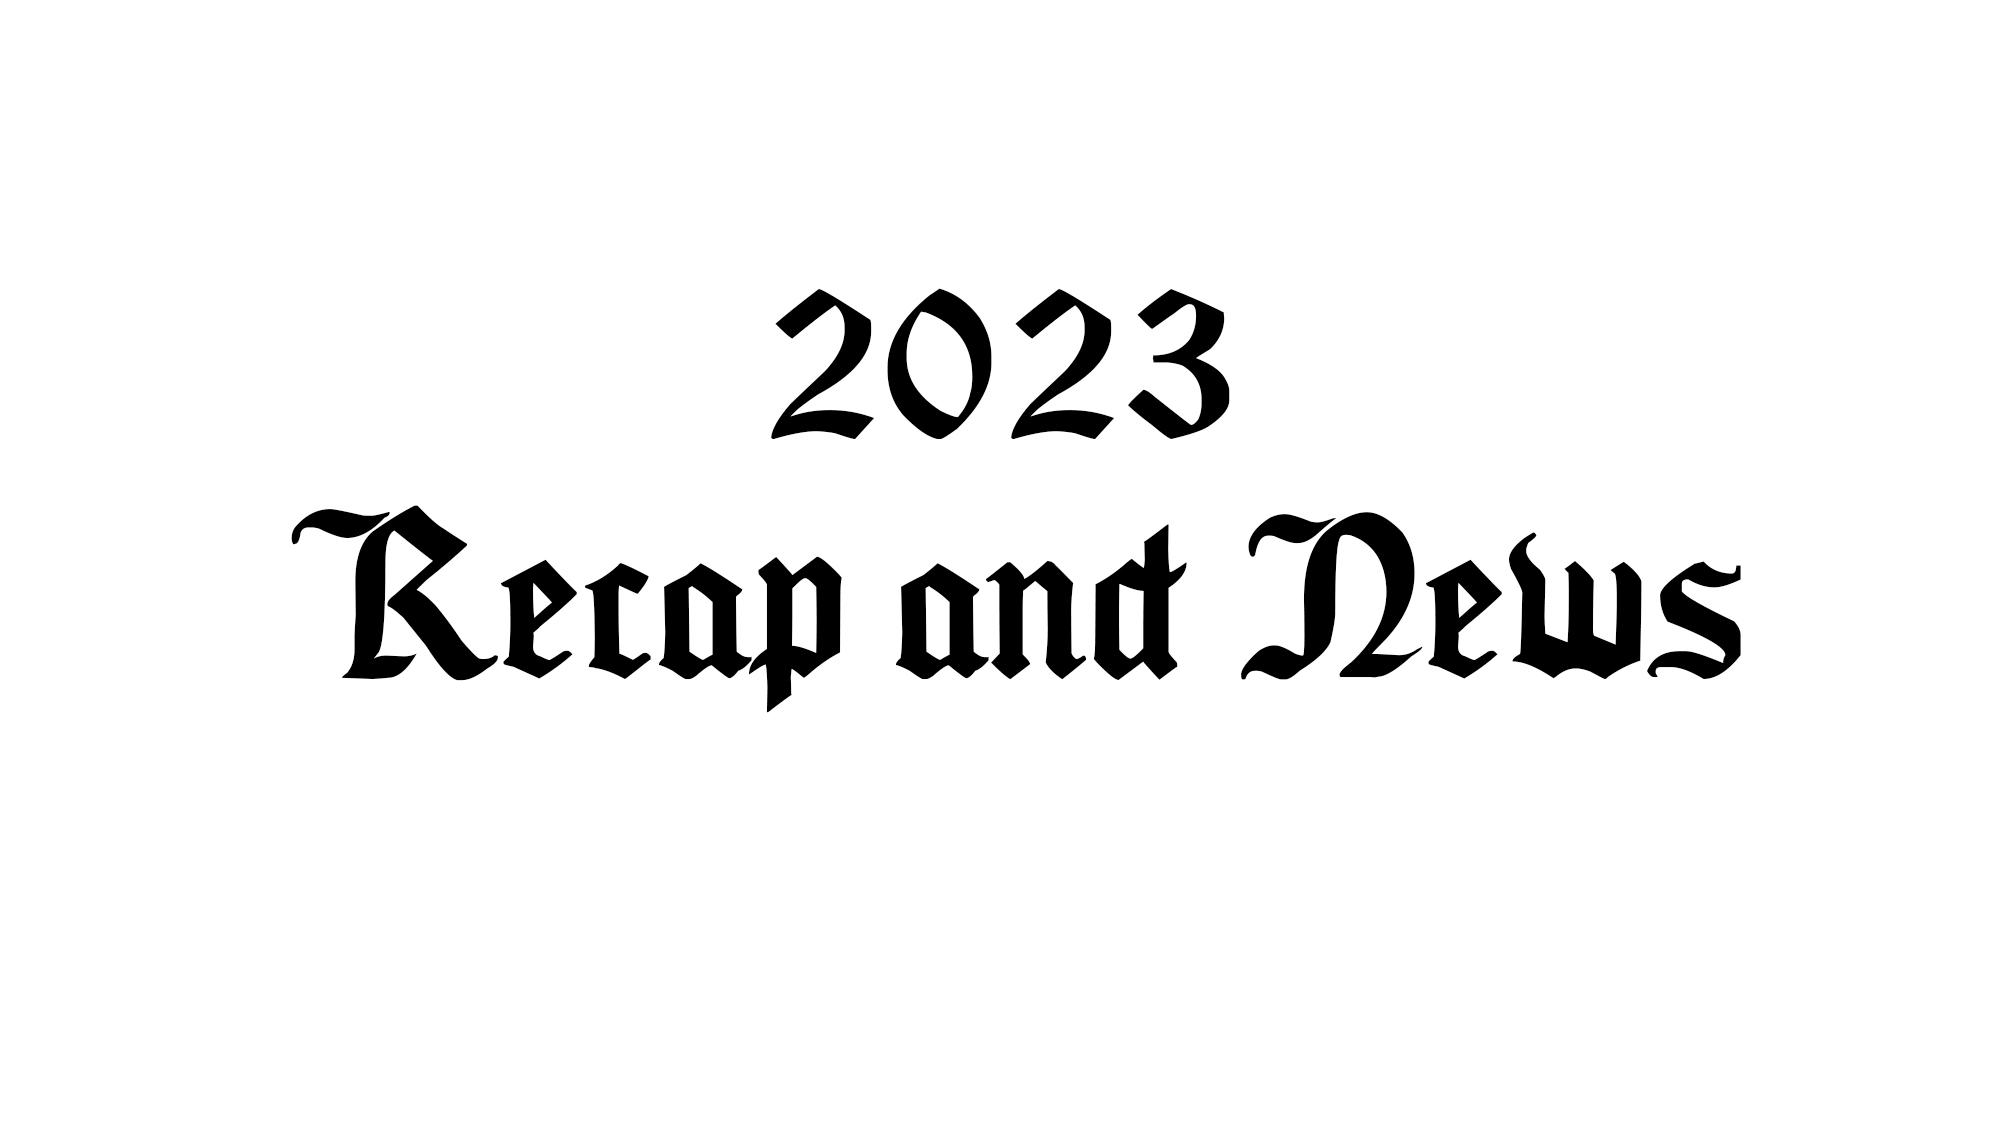 2023 Recap and News